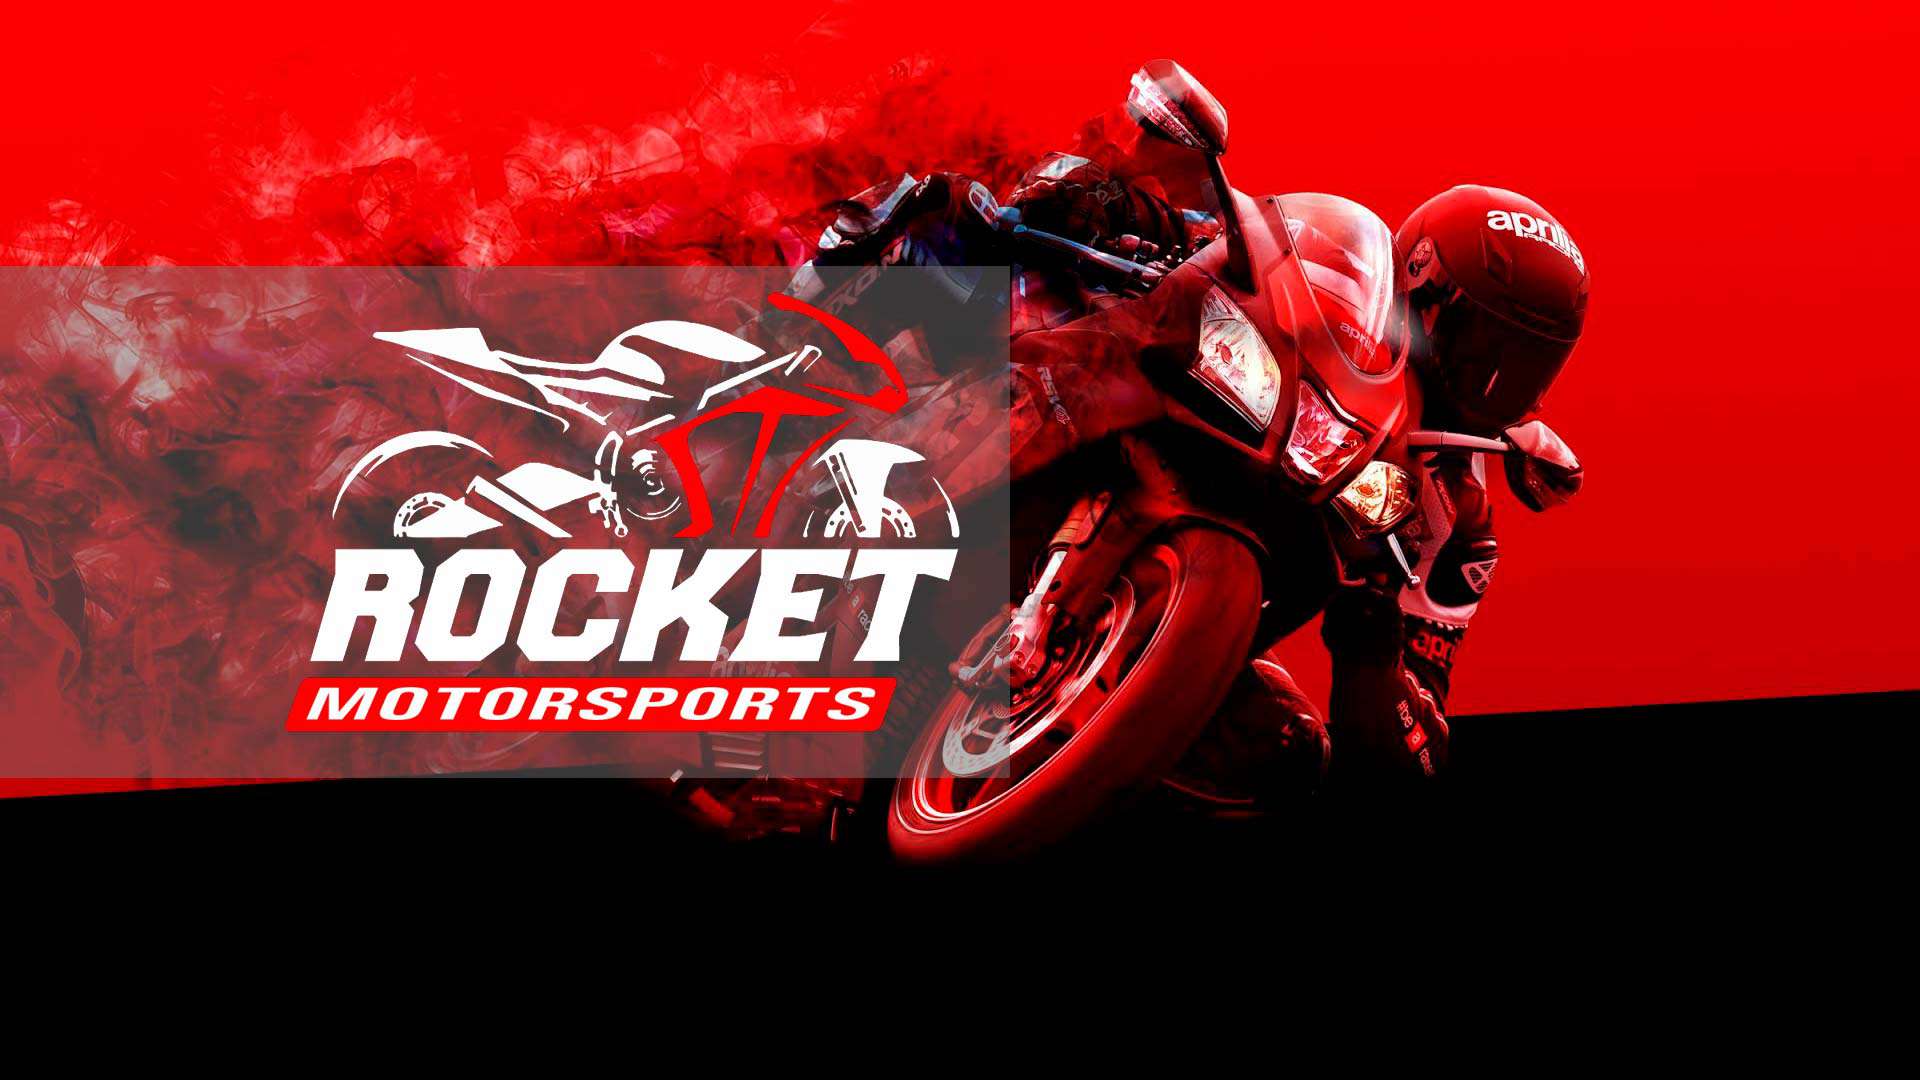 Rocket Motor Sports